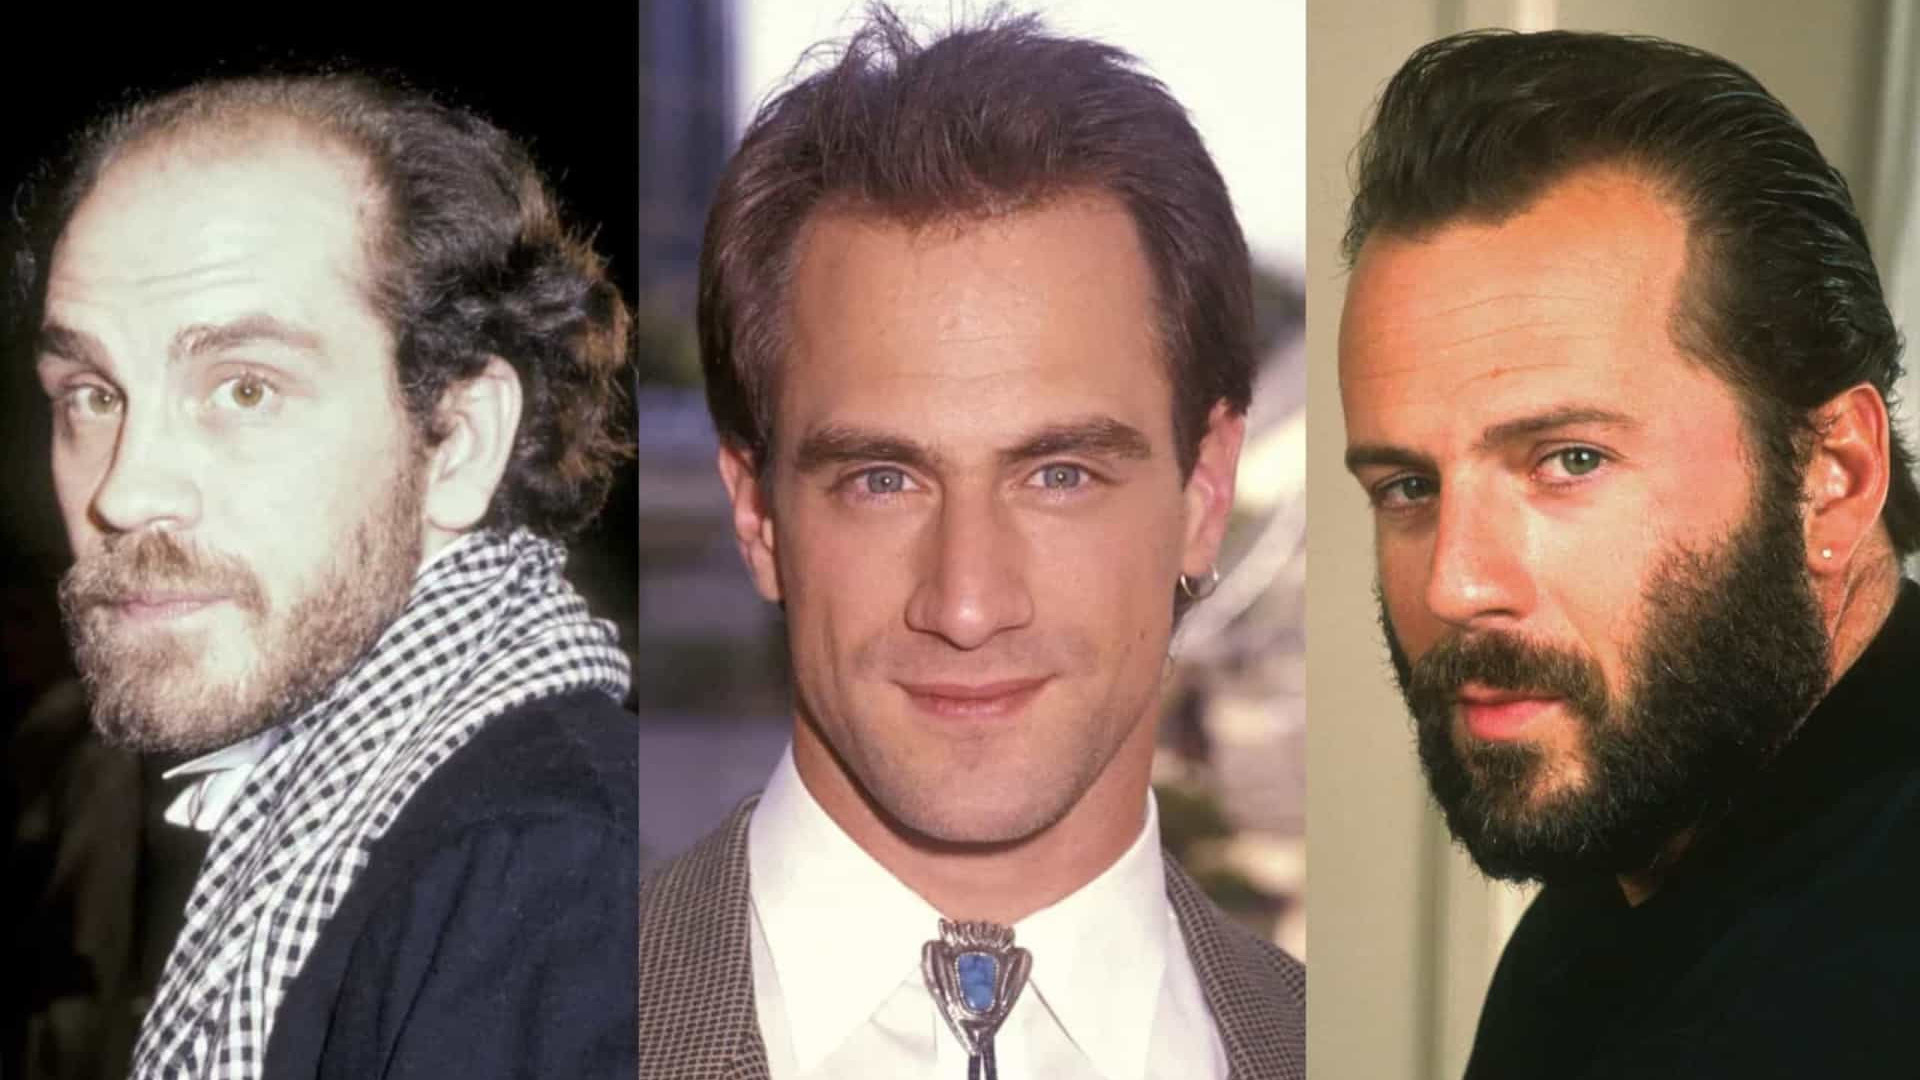 10 famosos carecas que já foram cabeludos; veja o antes e depois -  Observatório do Cinema